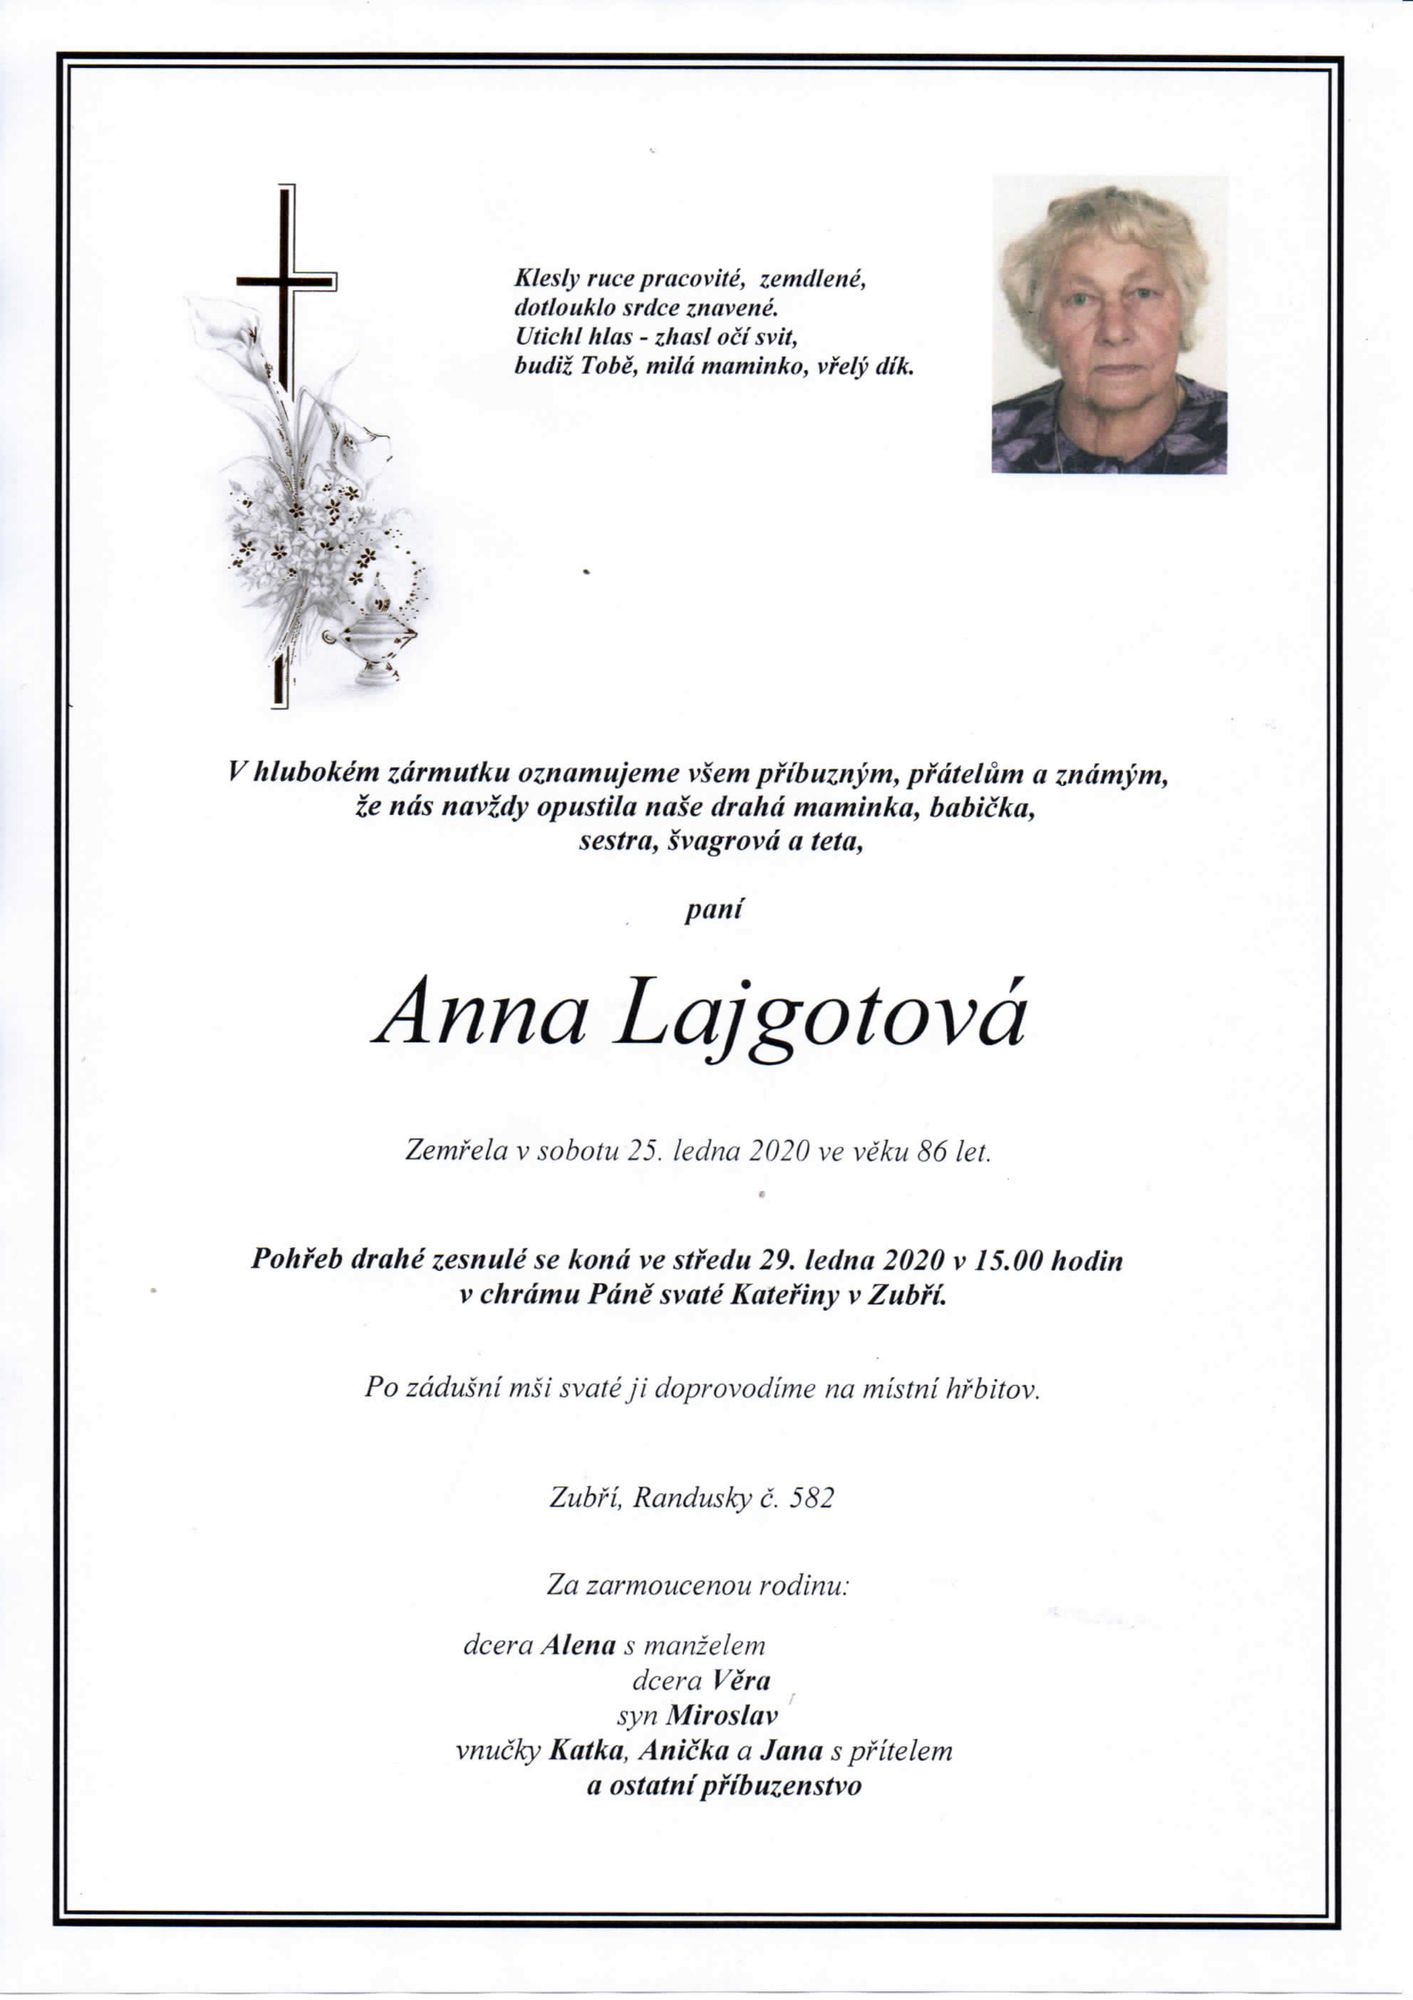 Anna Lajgotová